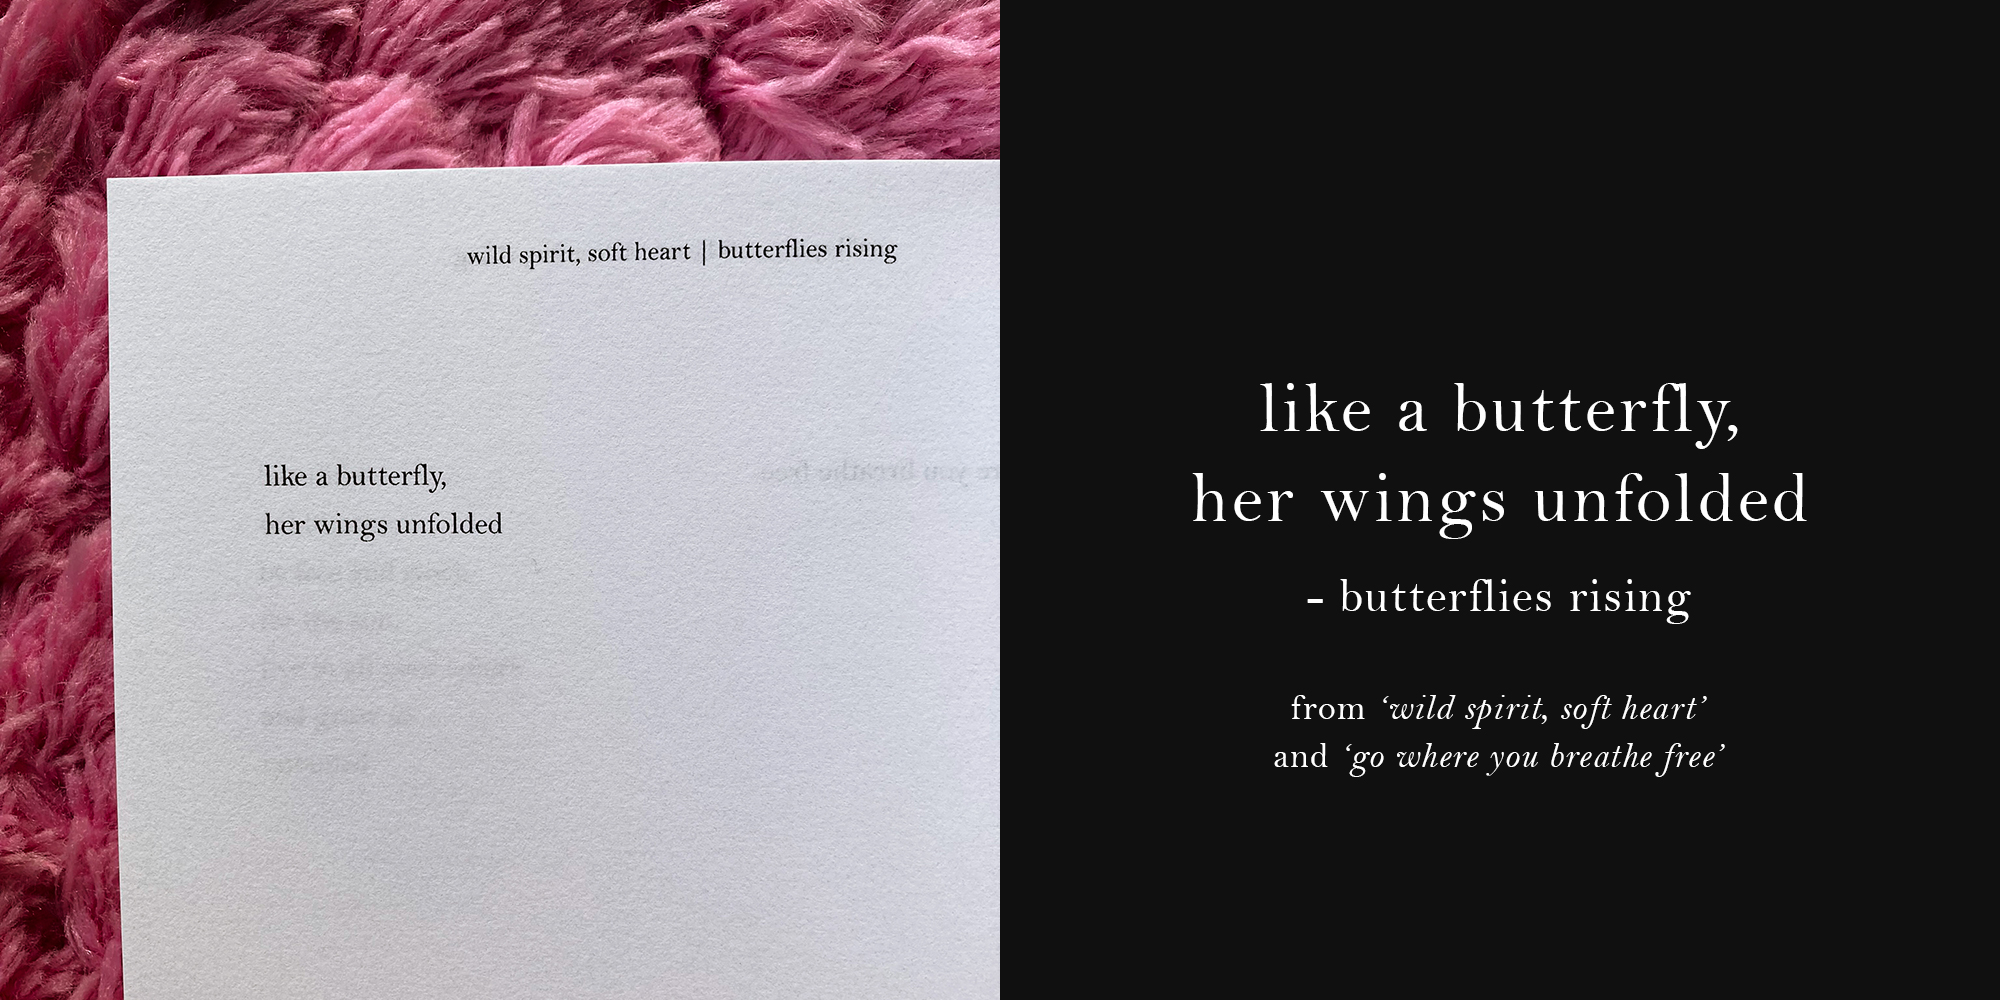 like a butterfly, her wings unfolded